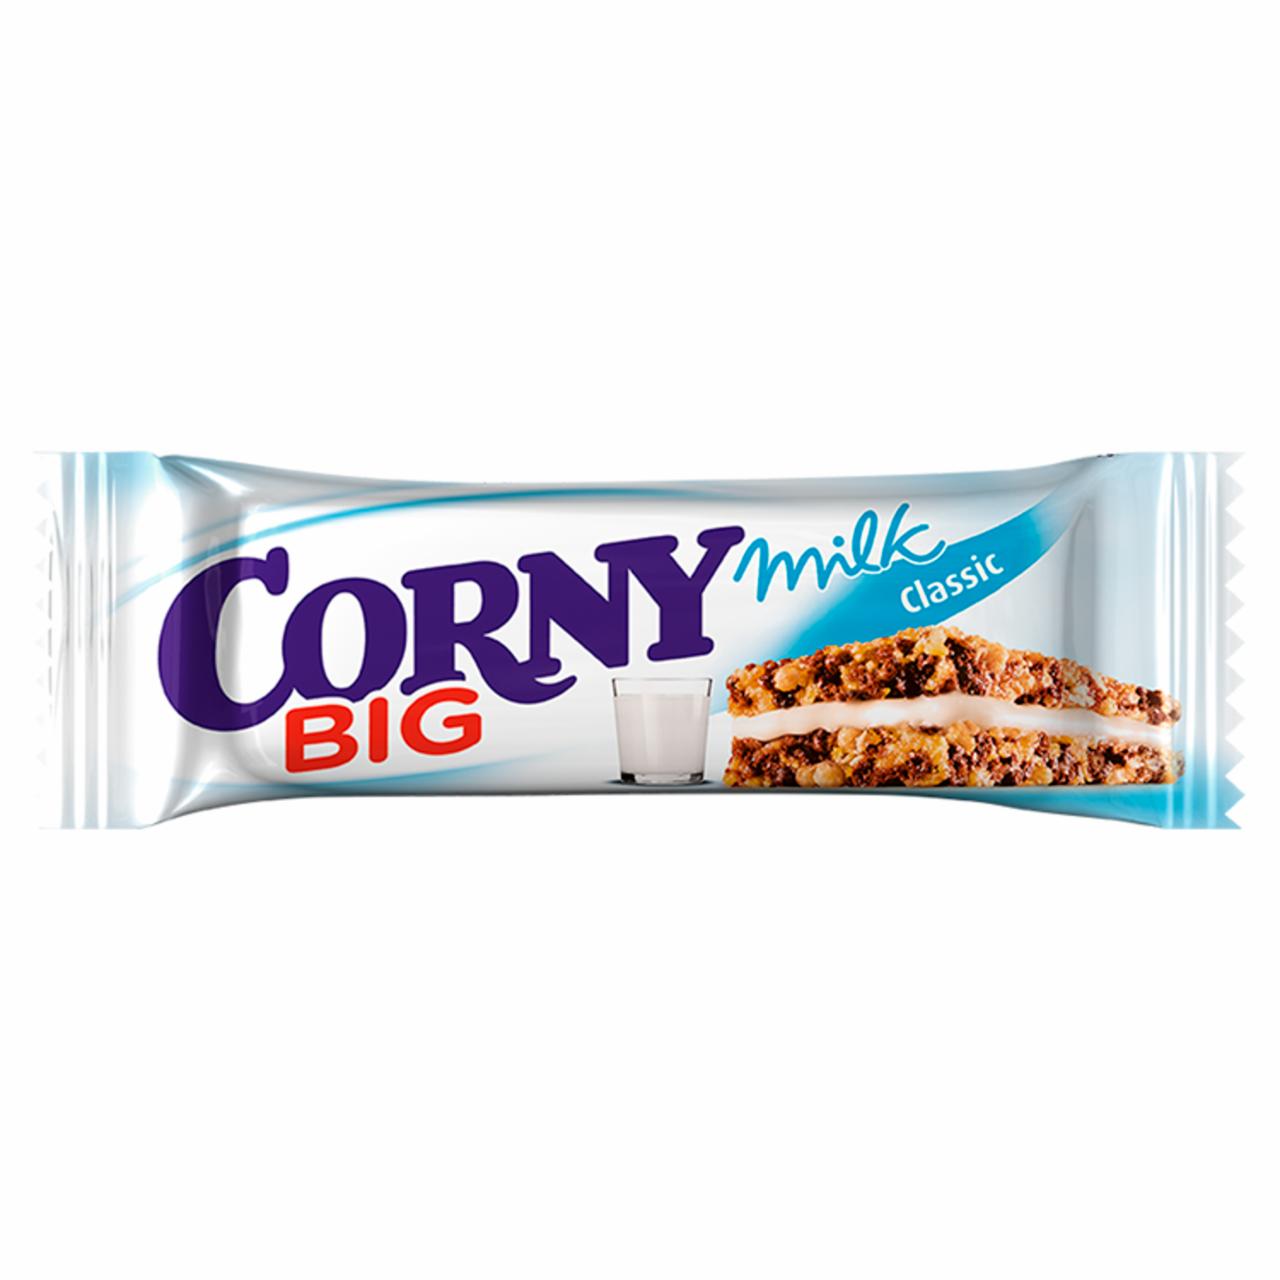 Képek - Corny Big Milk Classic gabonaszendvics tejkrém töltelékkel 40 g